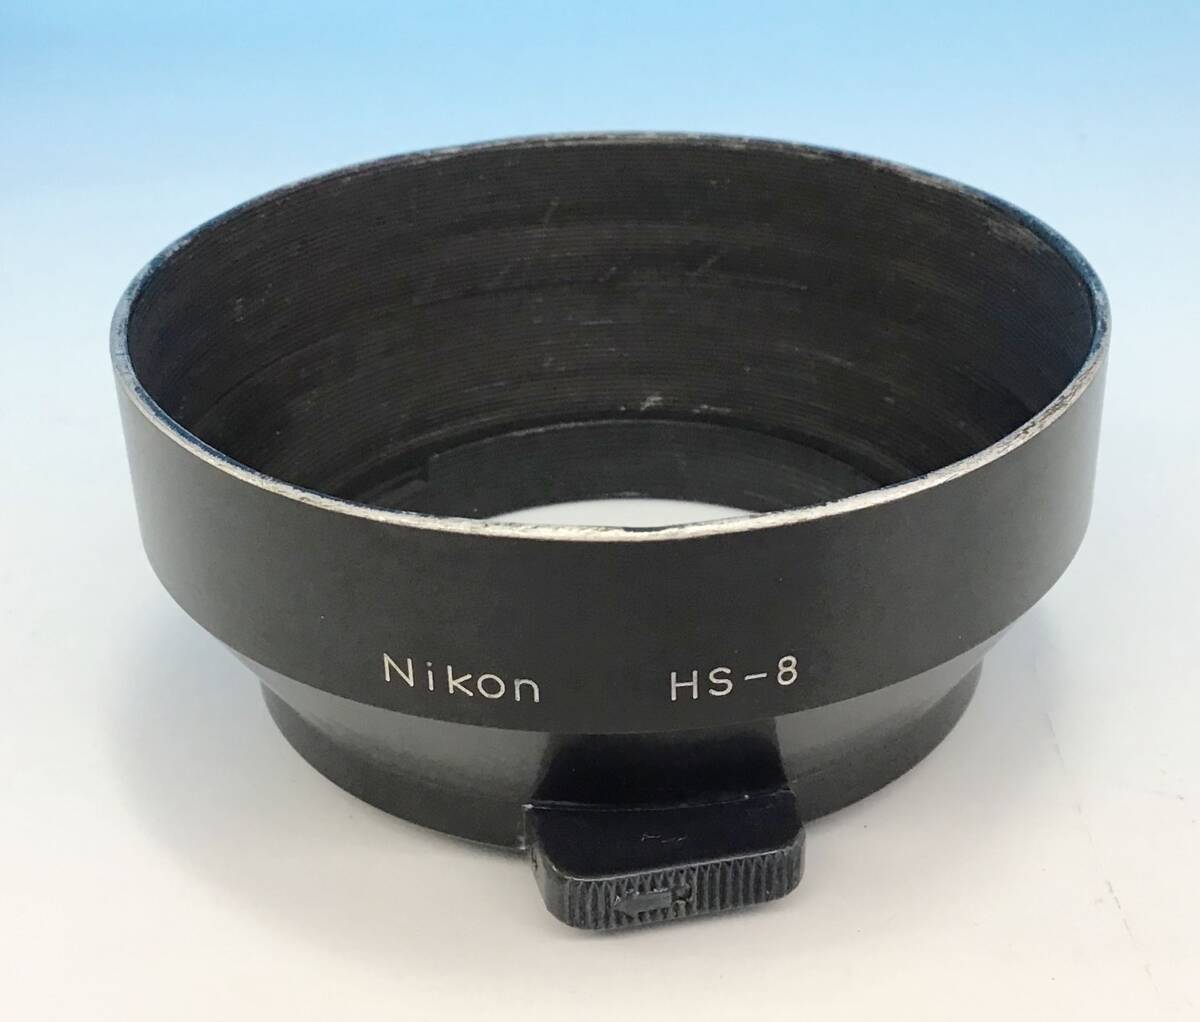 Nikon F2 フォトミック 一眼レフ フィルム カメラ ボディ シルバー/レンズ nikkor 28mm f3.5/レンズフード HS-8 昭和 レトロ ニコン の画像10